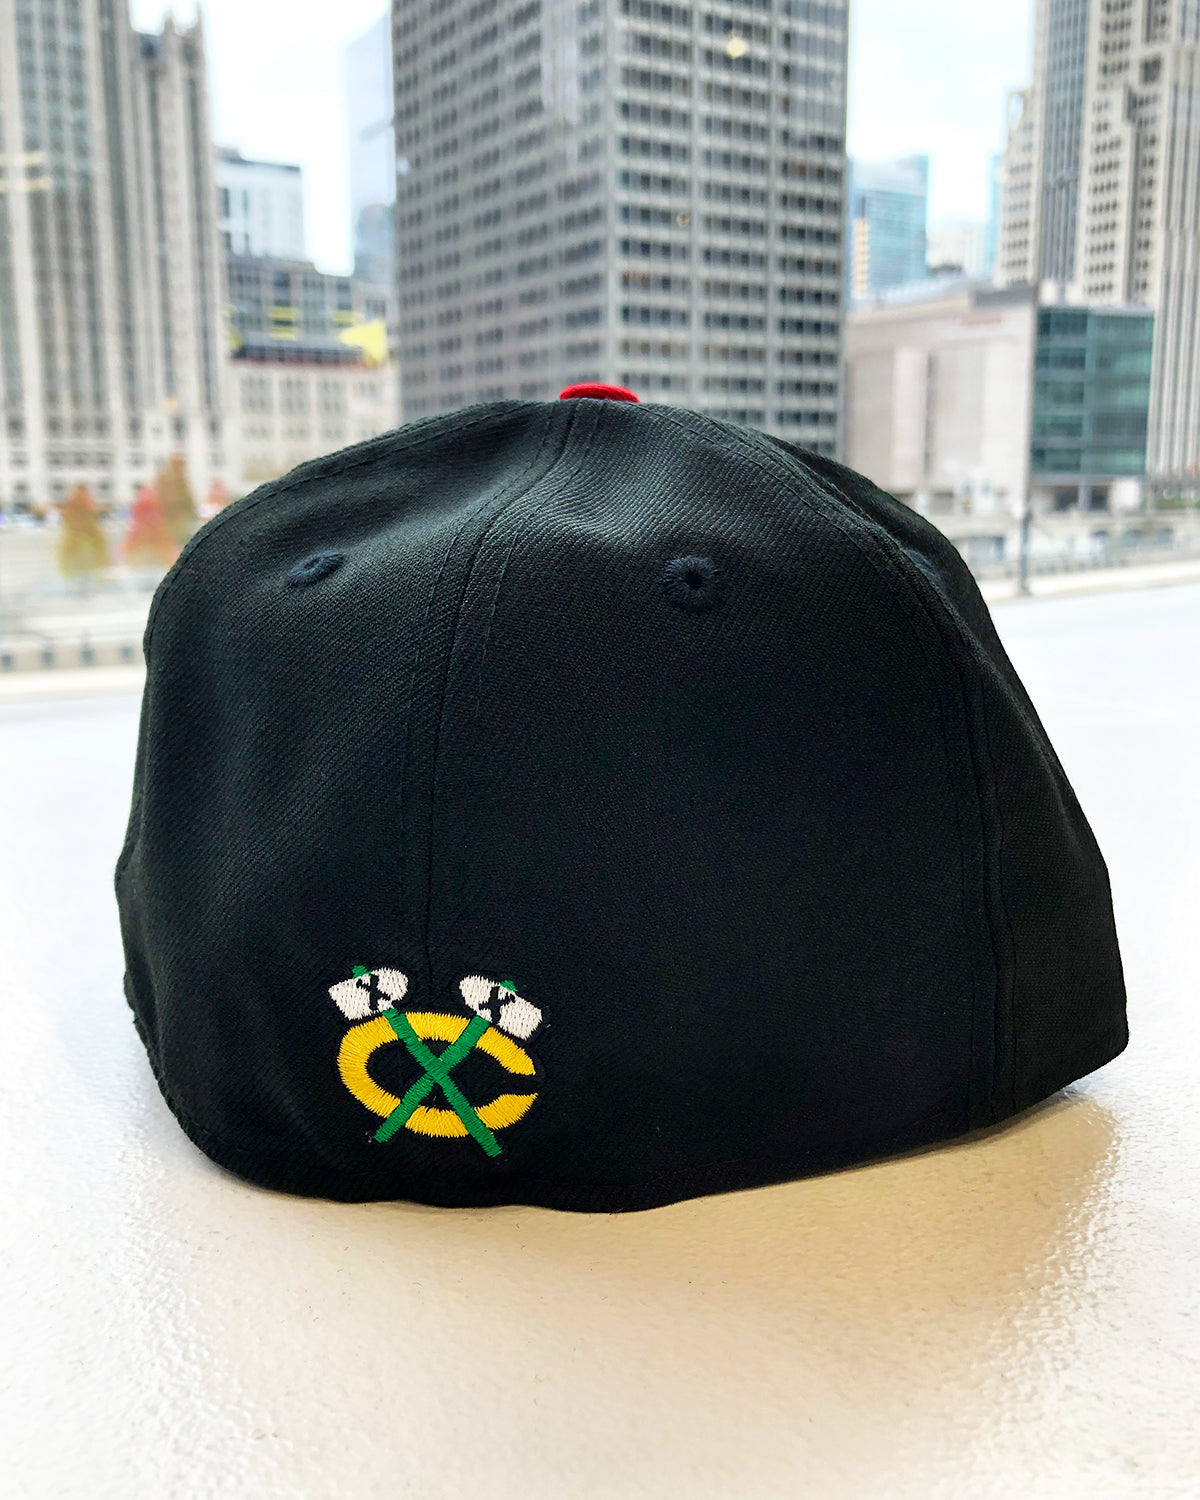 Flat visor cap - Chicago Blackhawks Reference : 4661